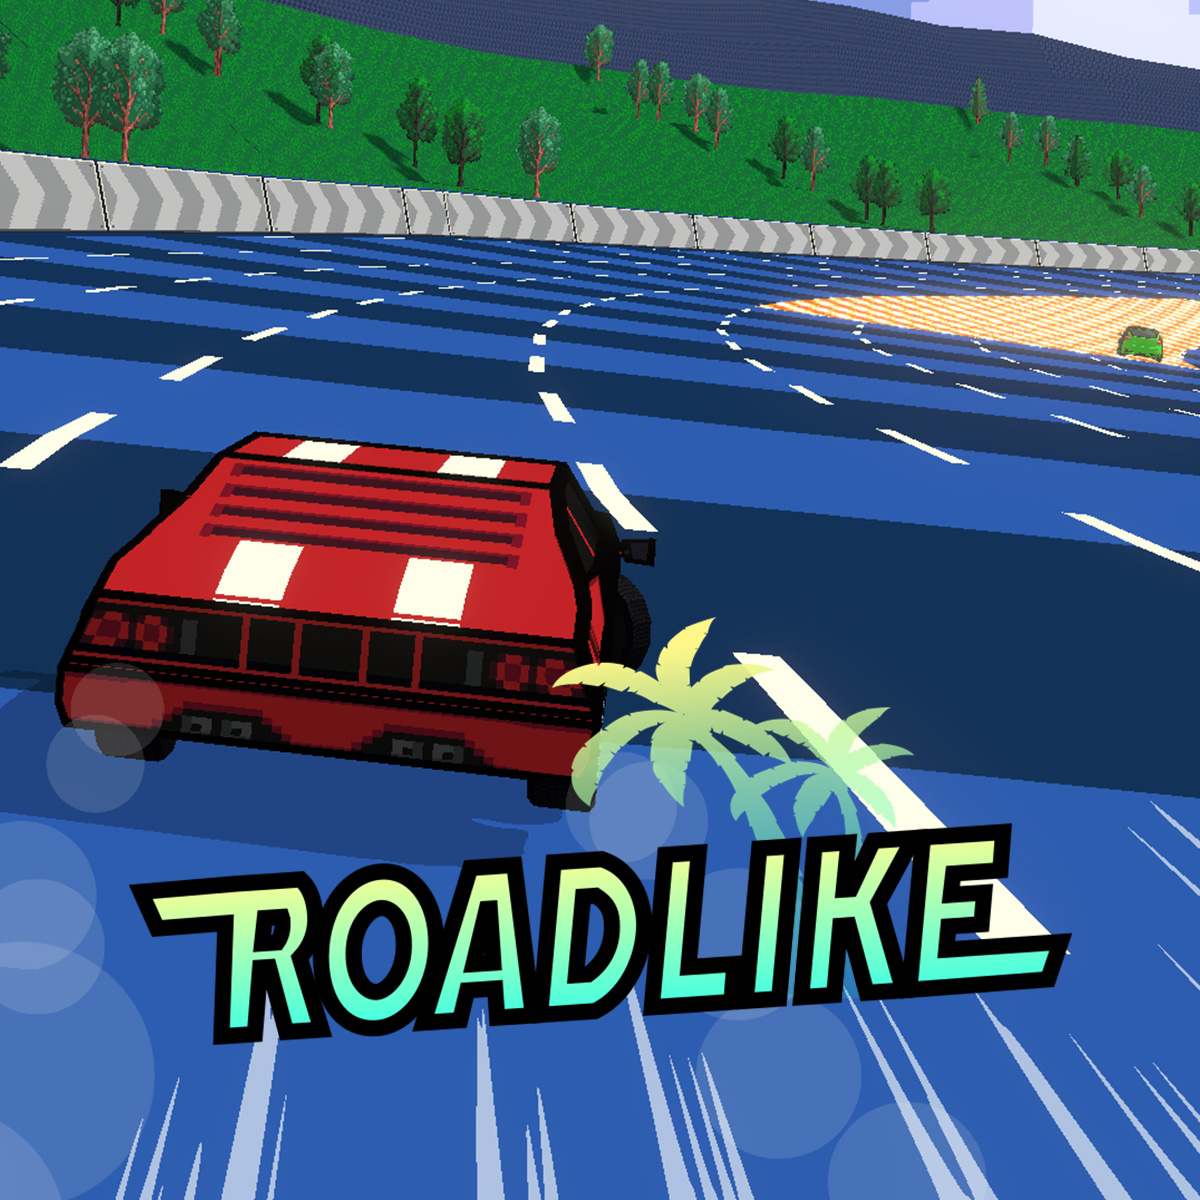 Roadlike